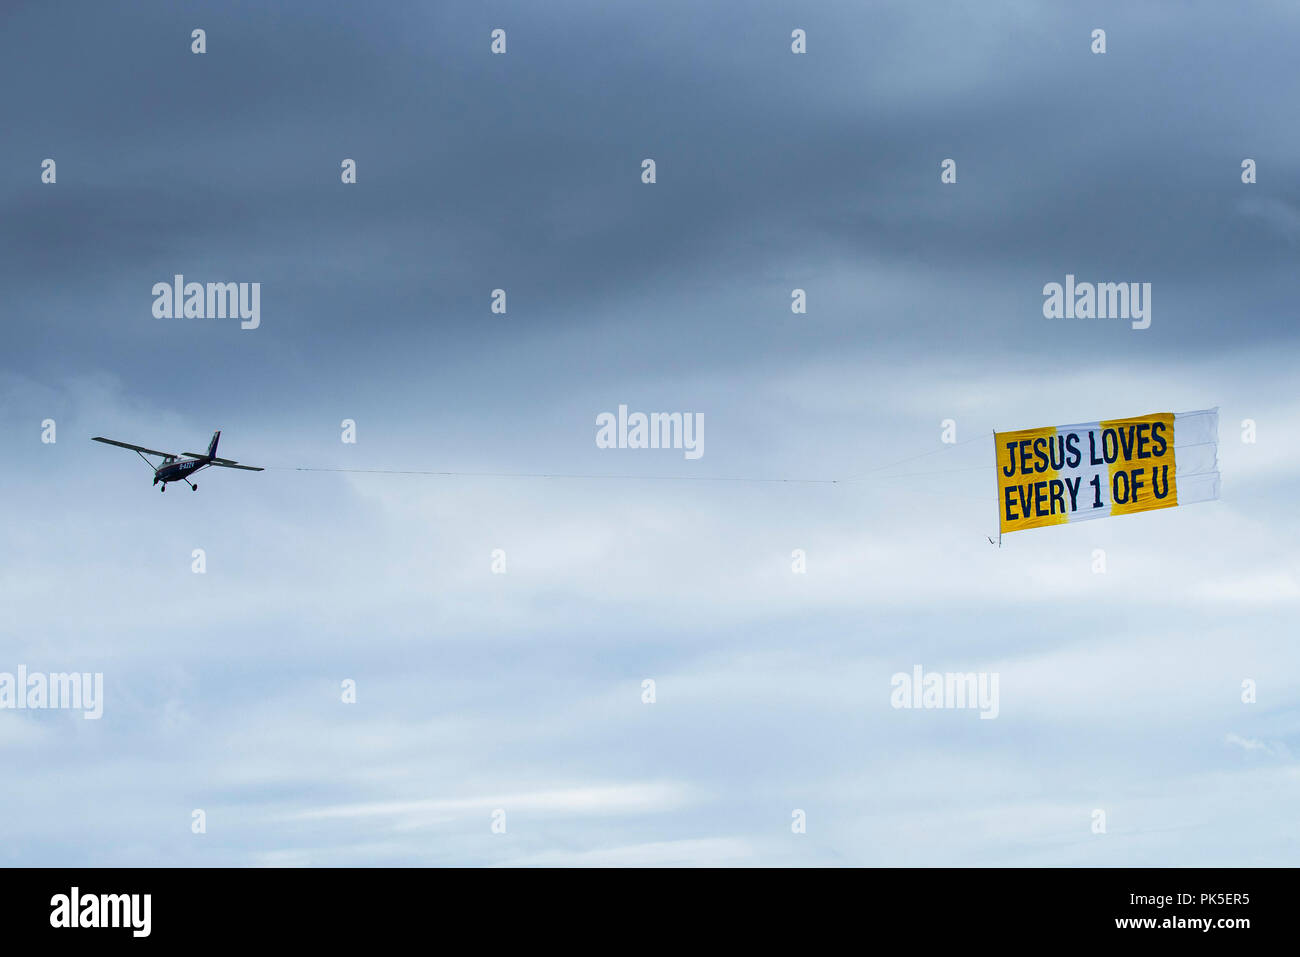 Ein kleines Flugzeug abschleppen ein Banner mit einer religiösen Botschaft. Stockfoto